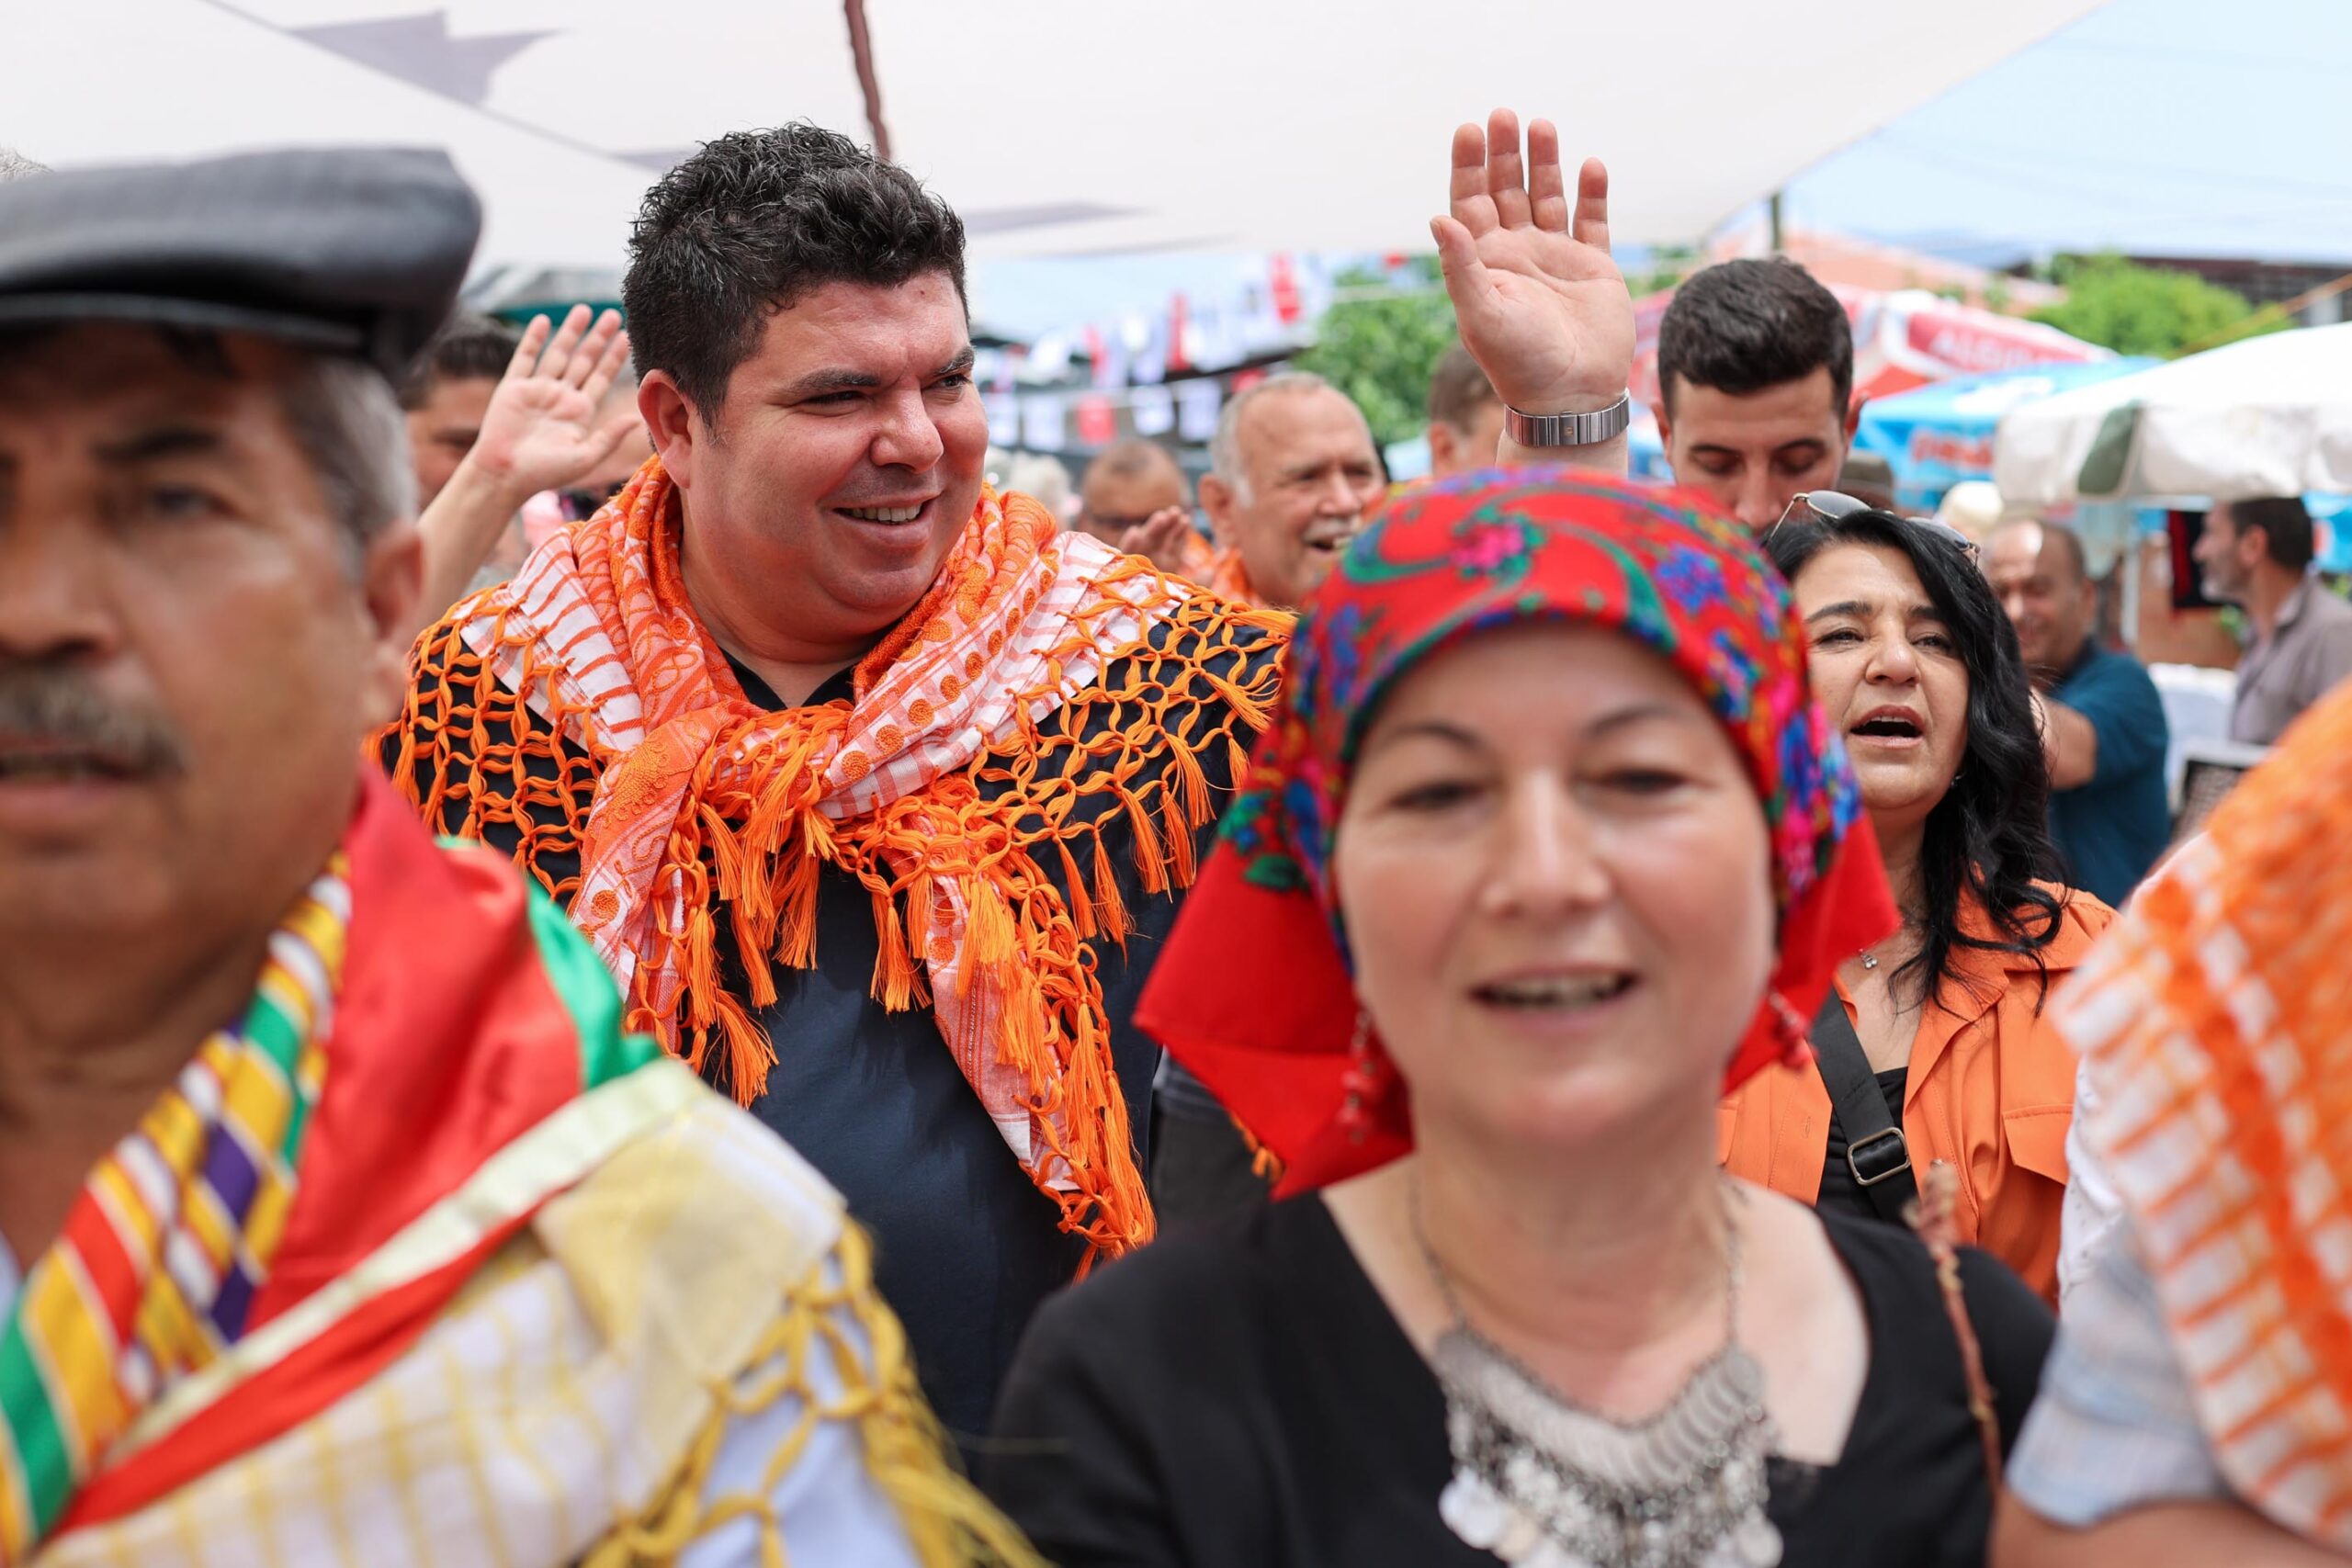 Buca’nın Kiraz Festivali’ne geri sayım başladı… Başkan Kılıç: ‘Tüm İzmirlileri bekliyoruz’